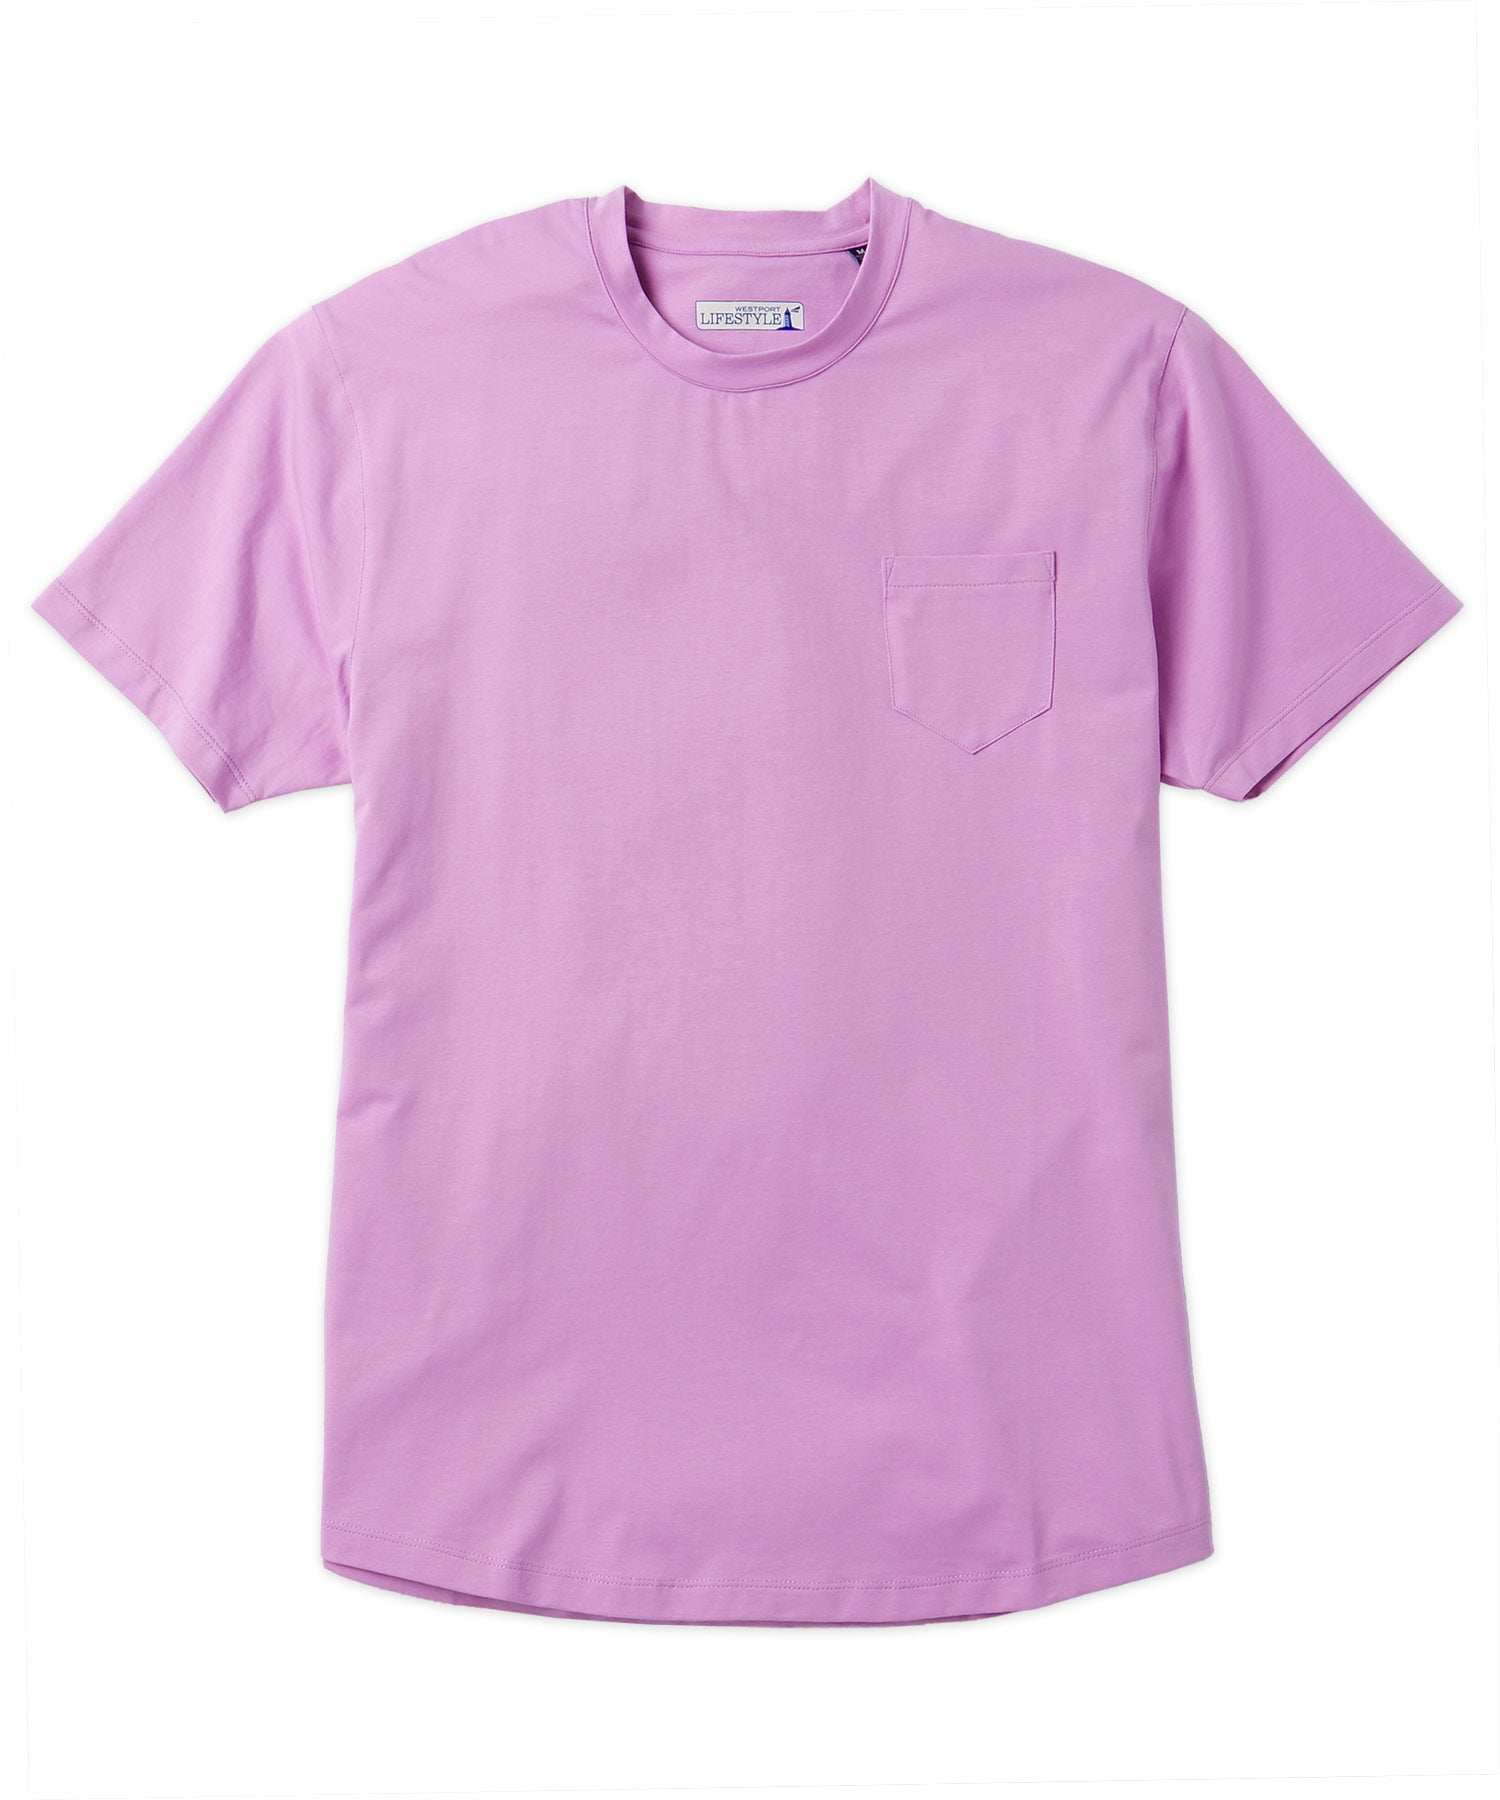 Westport Lifestyle Ridgefield Pocket T-Shirt, Men's Big & Tall